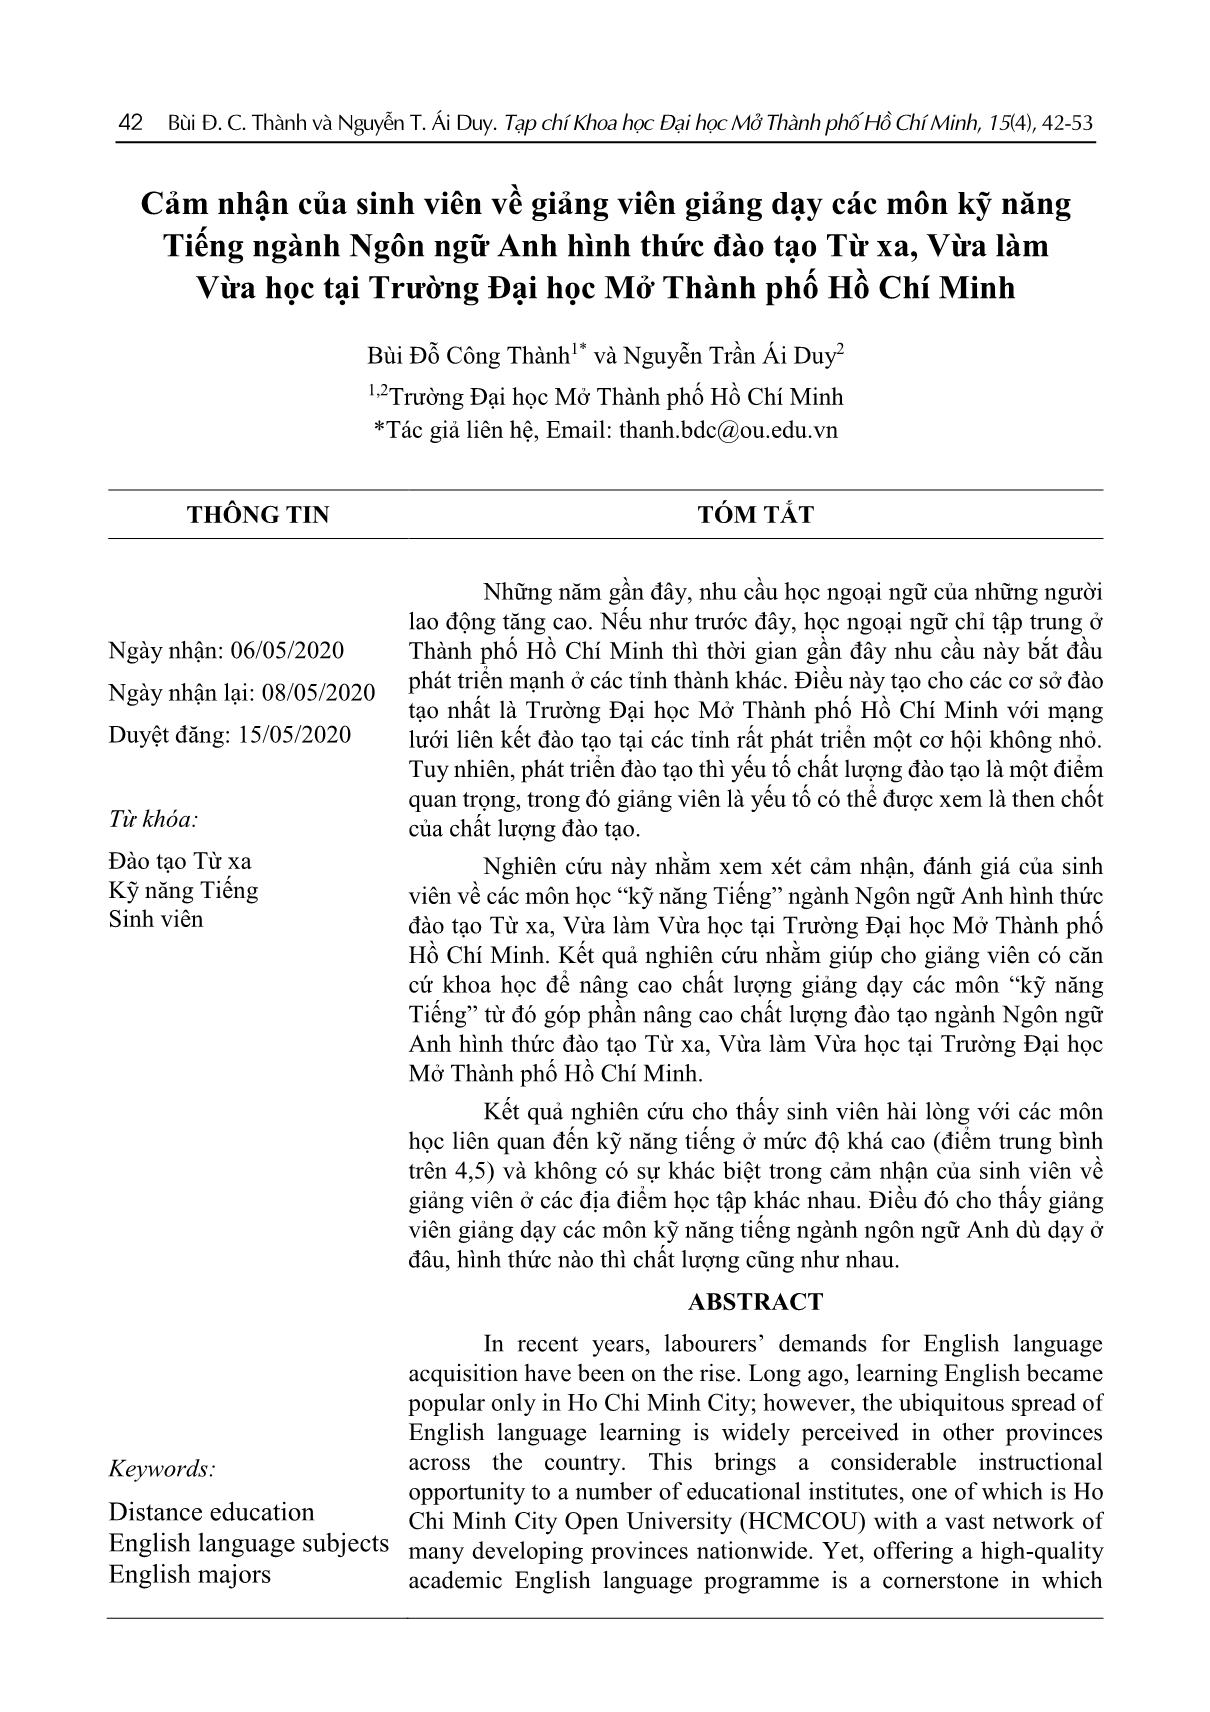 Cảm nhận của sinh viên về giảng viên giảng dạy các môn kỹ năng Tiếng ngành Ngôn ngữ Anh hình thức đào tạo Từ xa, Vừa làm Vừa học tại Trường Đại học Mở Thành phố Hồ Chí Minh trang 1